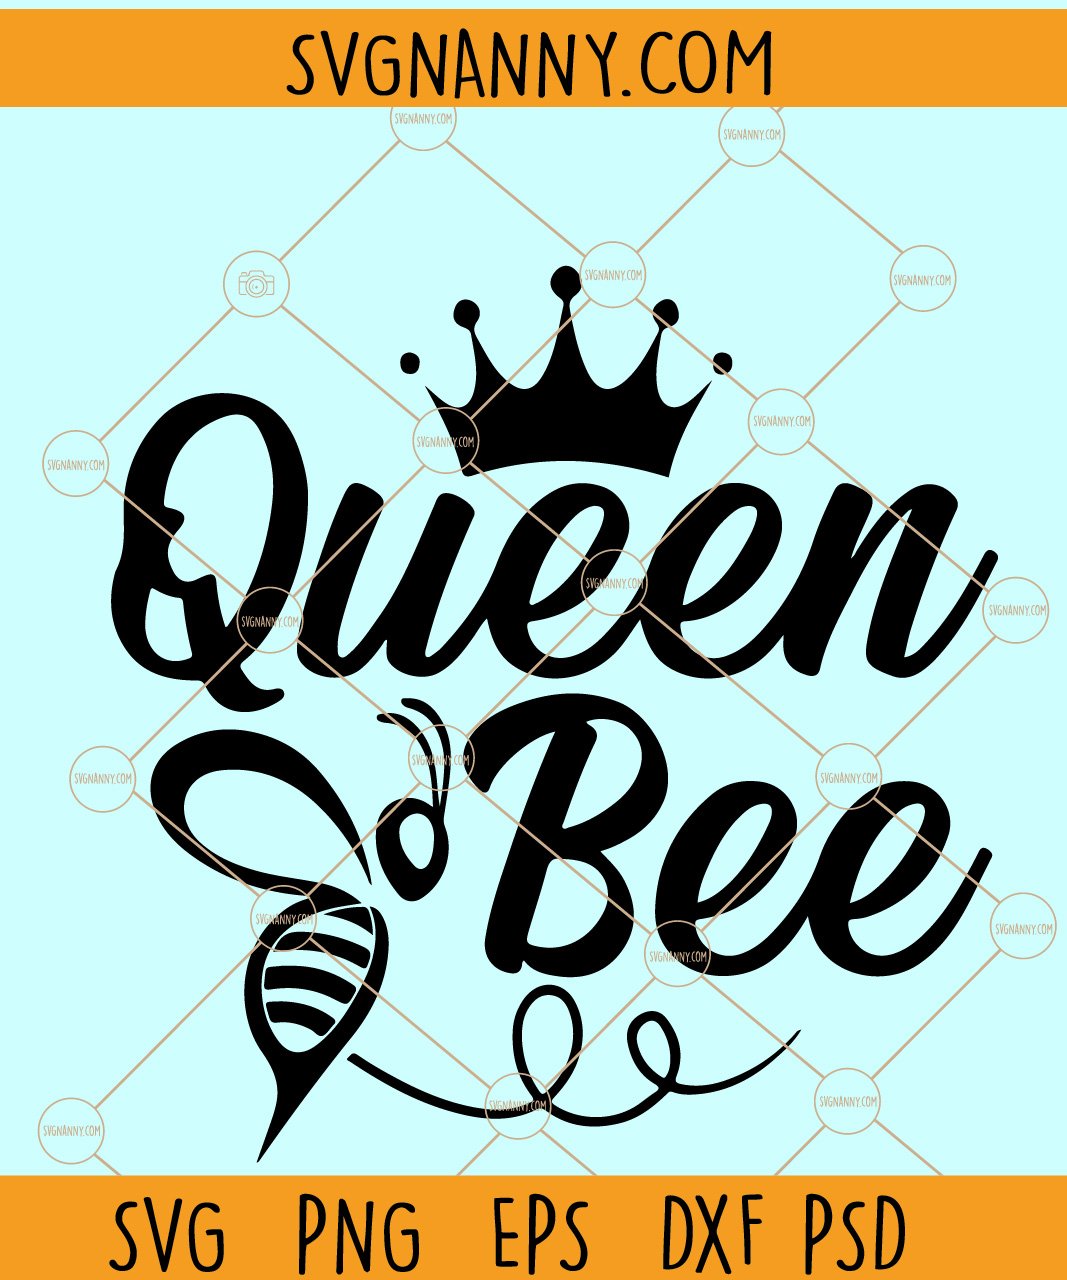 Queen Bee SVG, Queen Bee PNG, Boss SVG, Queen SVG, Bee SVG | SVG NANNY